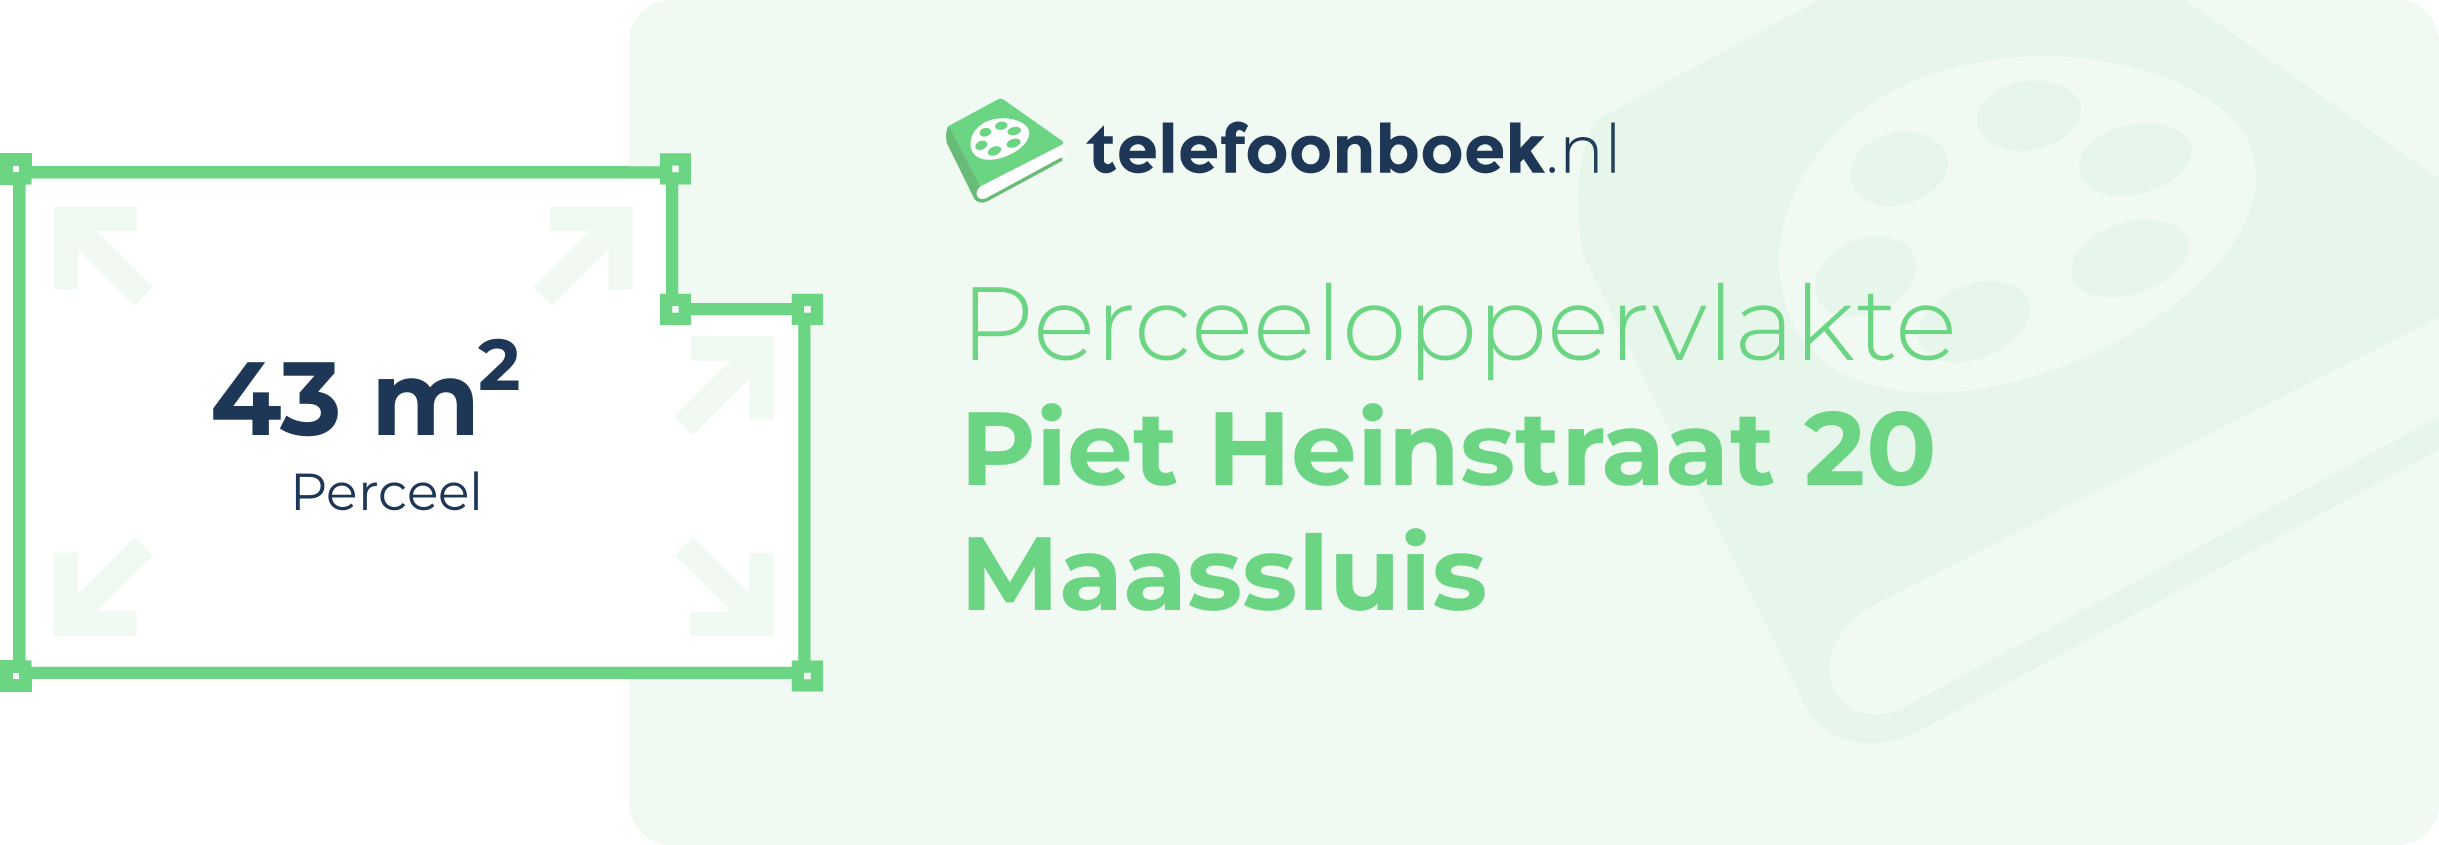 Perceeloppervlakte Piet Heinstraat 20 Maassluis